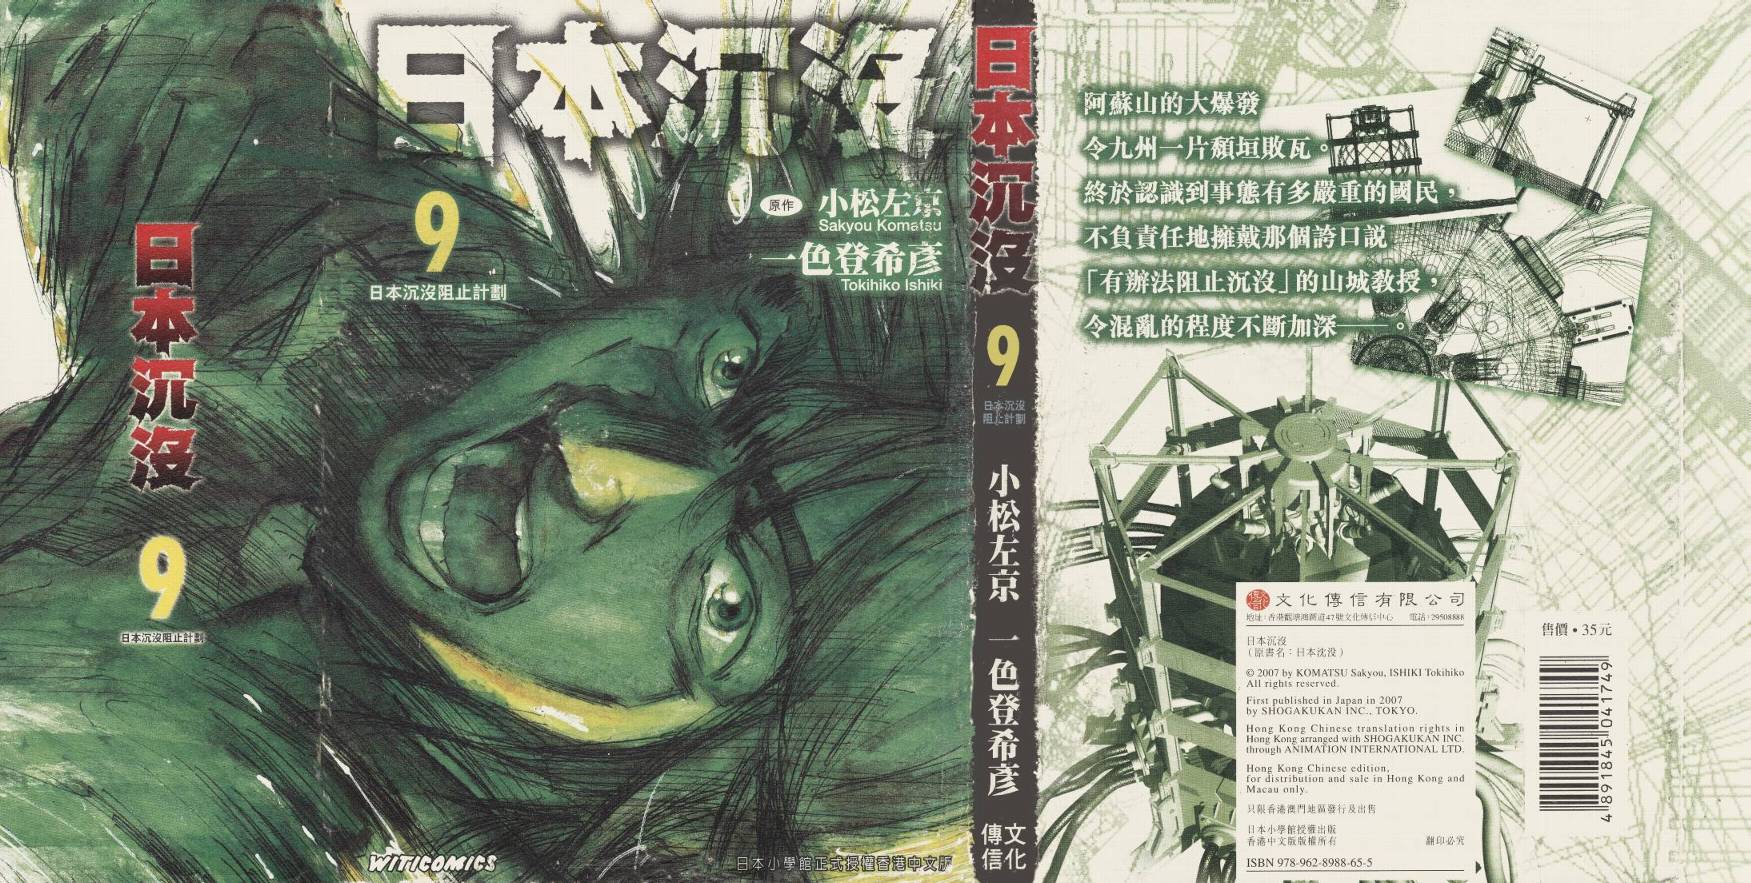 日本沉沒 第9卷 漫畫線上看 動漫戲說 Acgn Cc